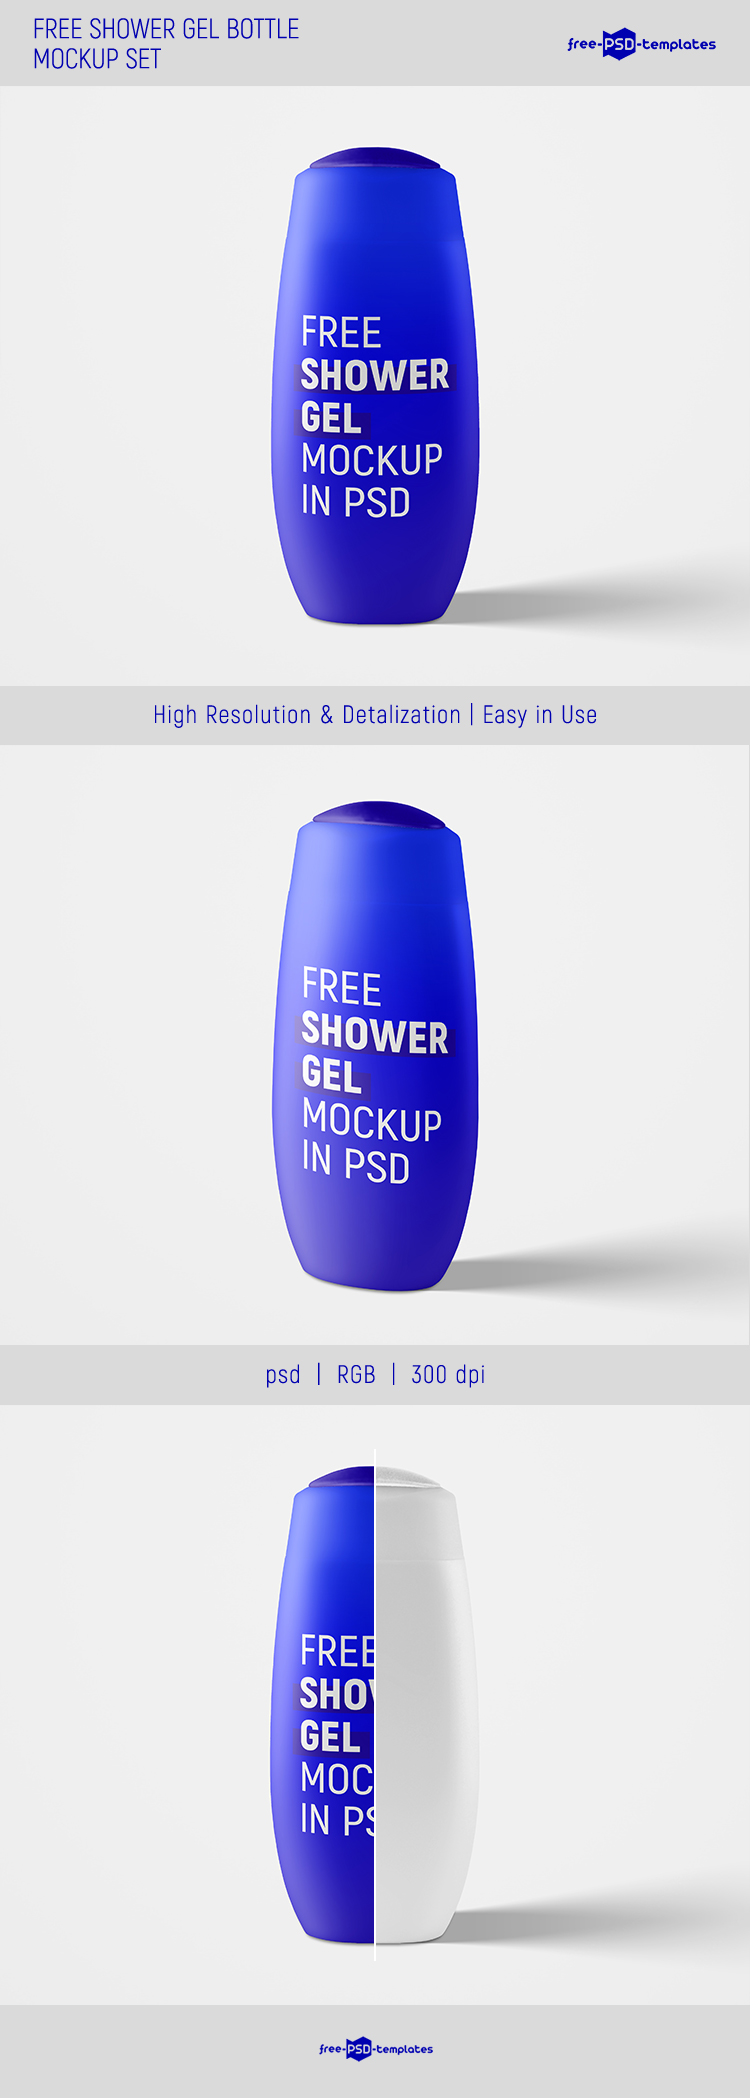 Download Free Shower Gel Bottle Mockup Set | Free PSD Templates